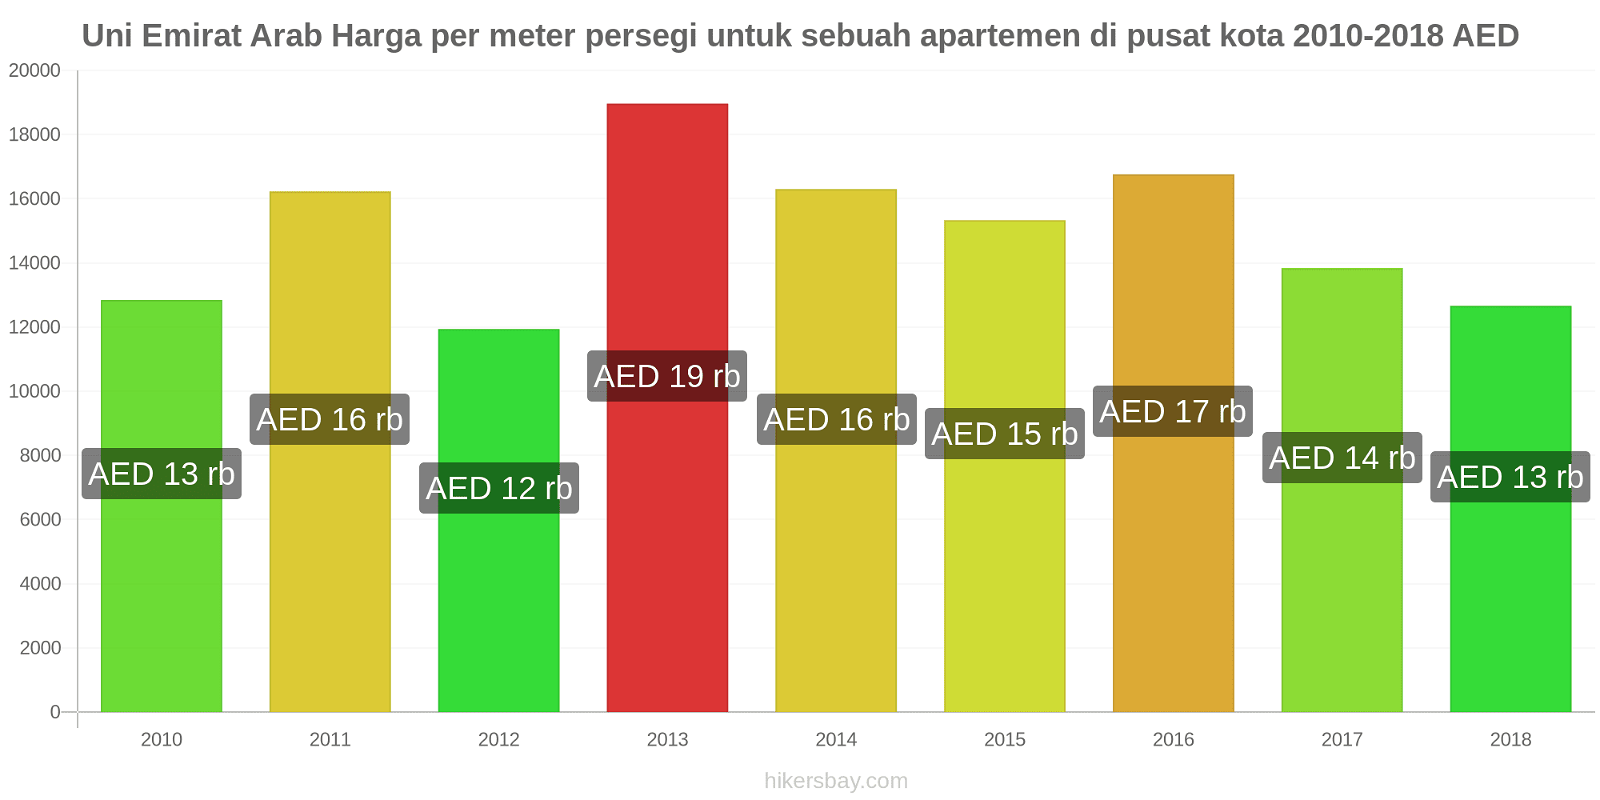 Uni Emirat Arab perubahan harga Harga per meter persegi untuk apartemen di pusat kota hikersbay.com